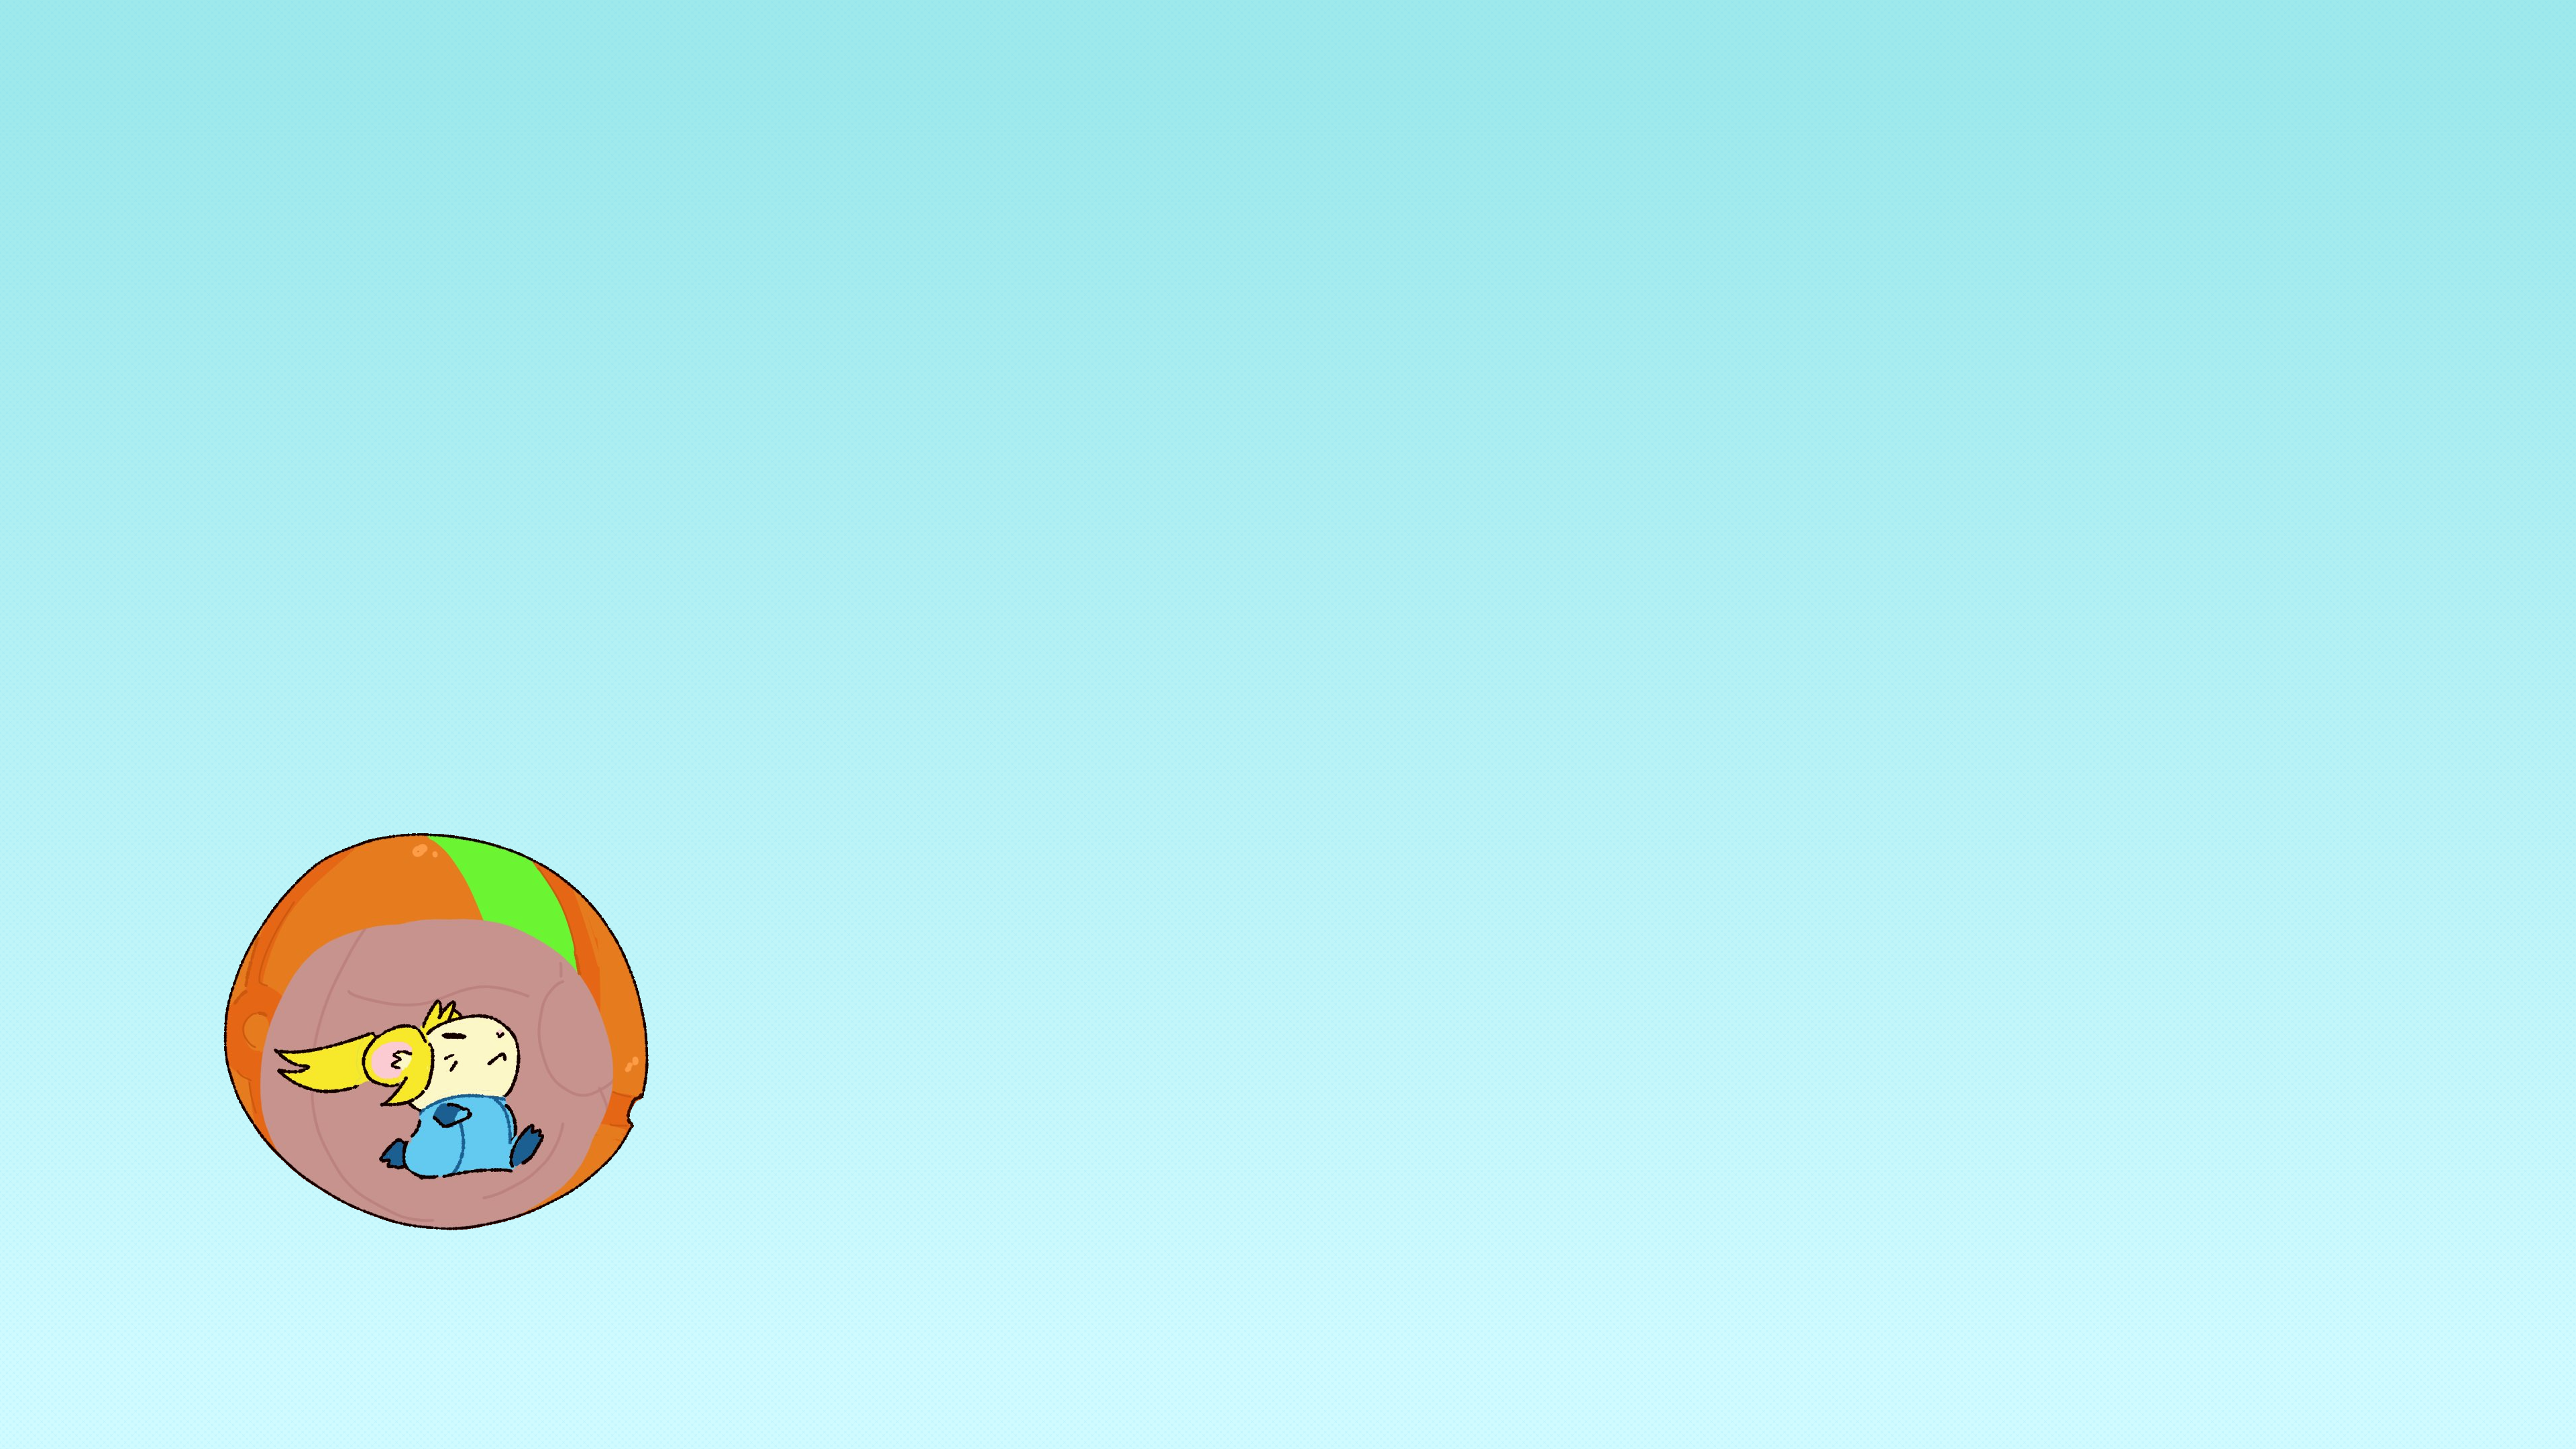 Anime 3840x2160 video games video game girls long hair blonde Samus Aran Metroid Nintendo anime girls zero suit Zero Suit Samus hamster running simple background cartoon chibi blue background rodent